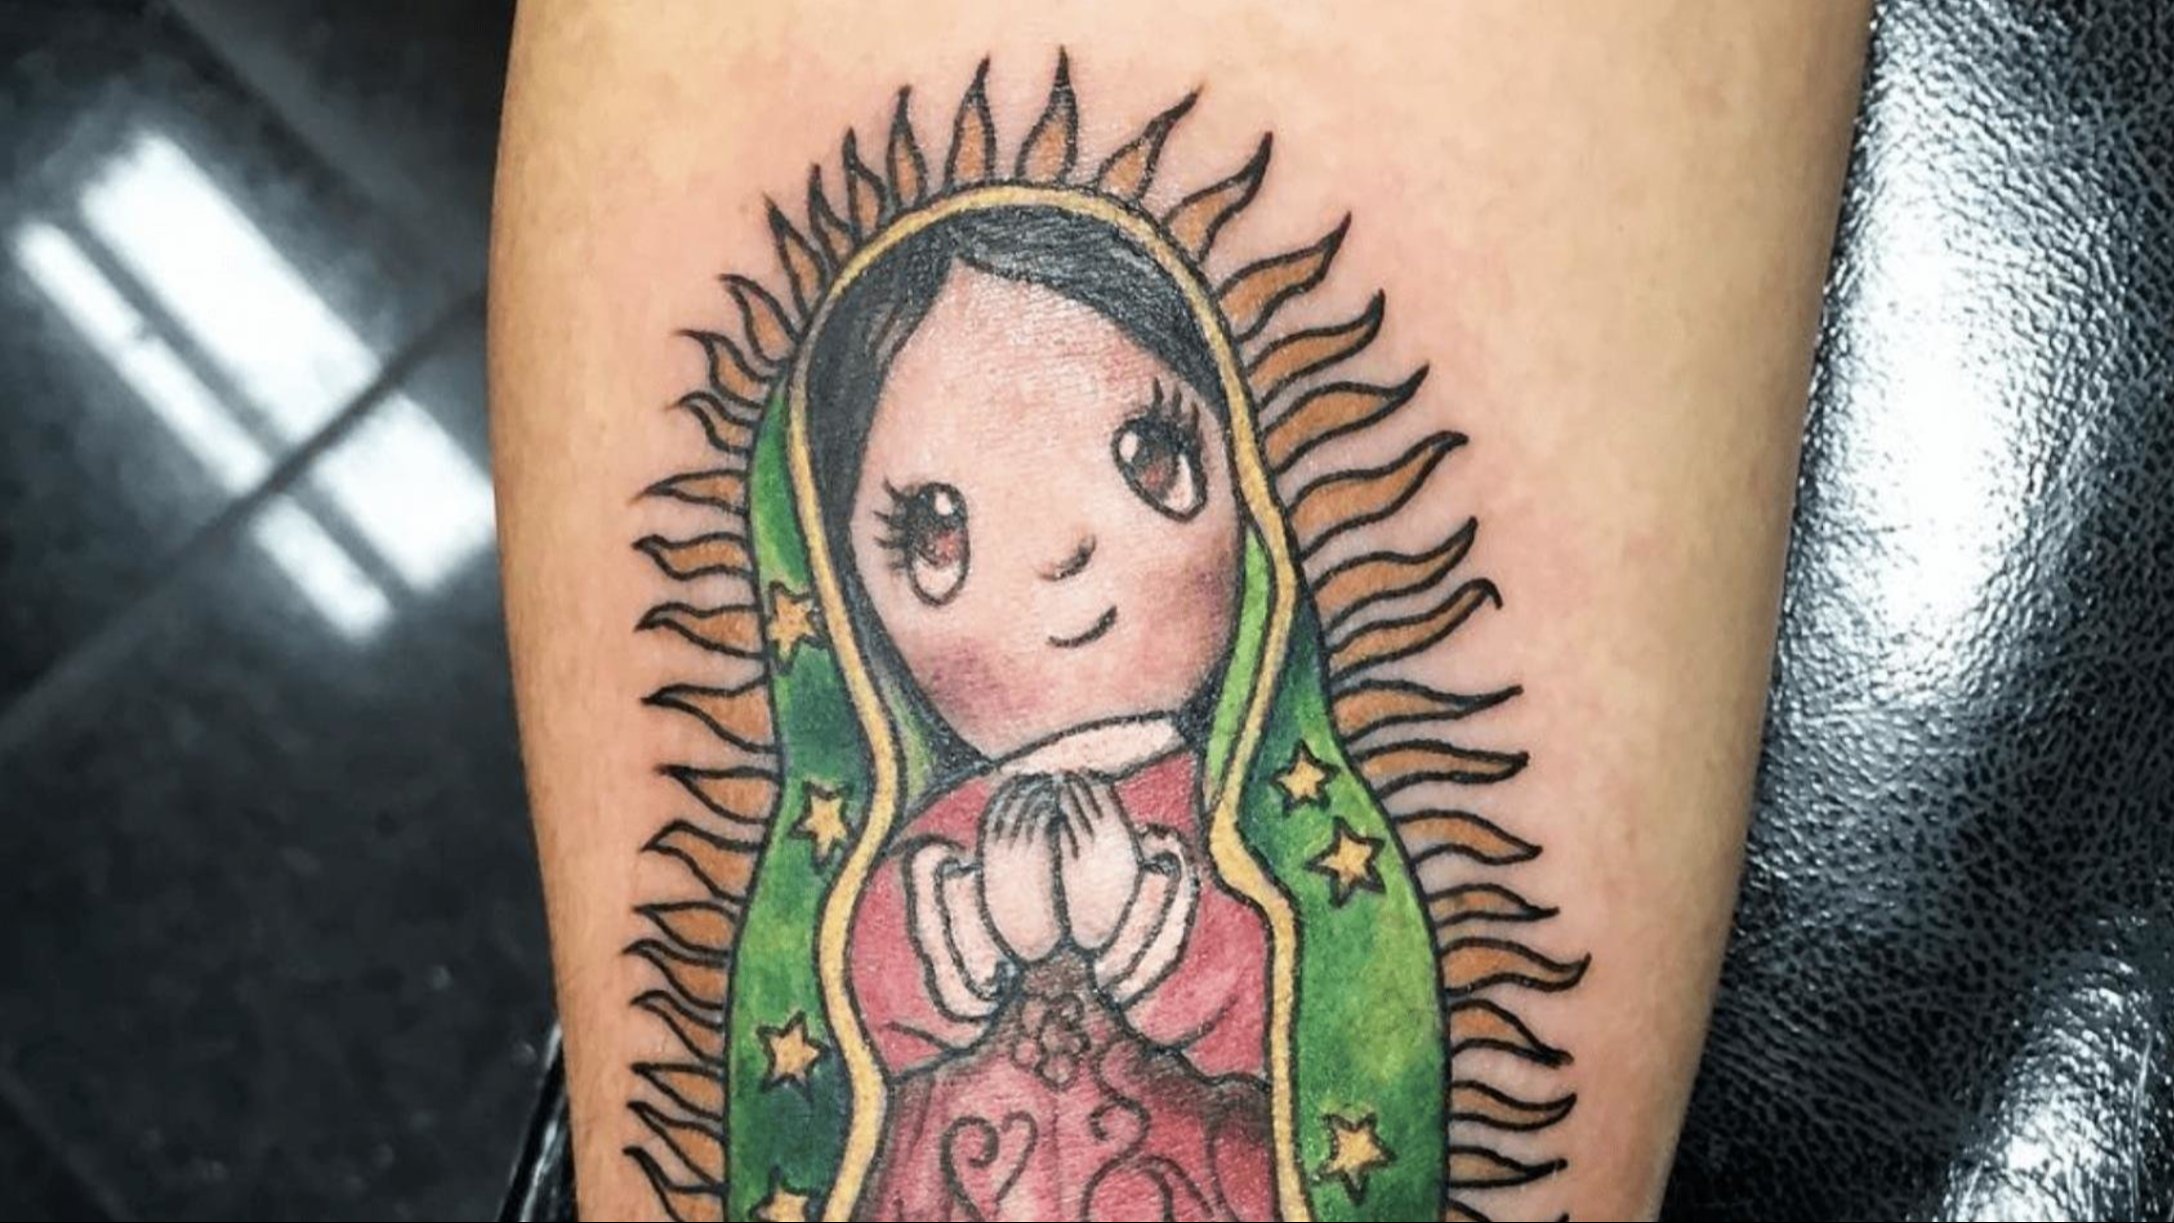 Lras Mexico City tatuaje Convention Virgin Mary imagen  tatuaje Imágenes   kandy  Imágenes españoles imágenes